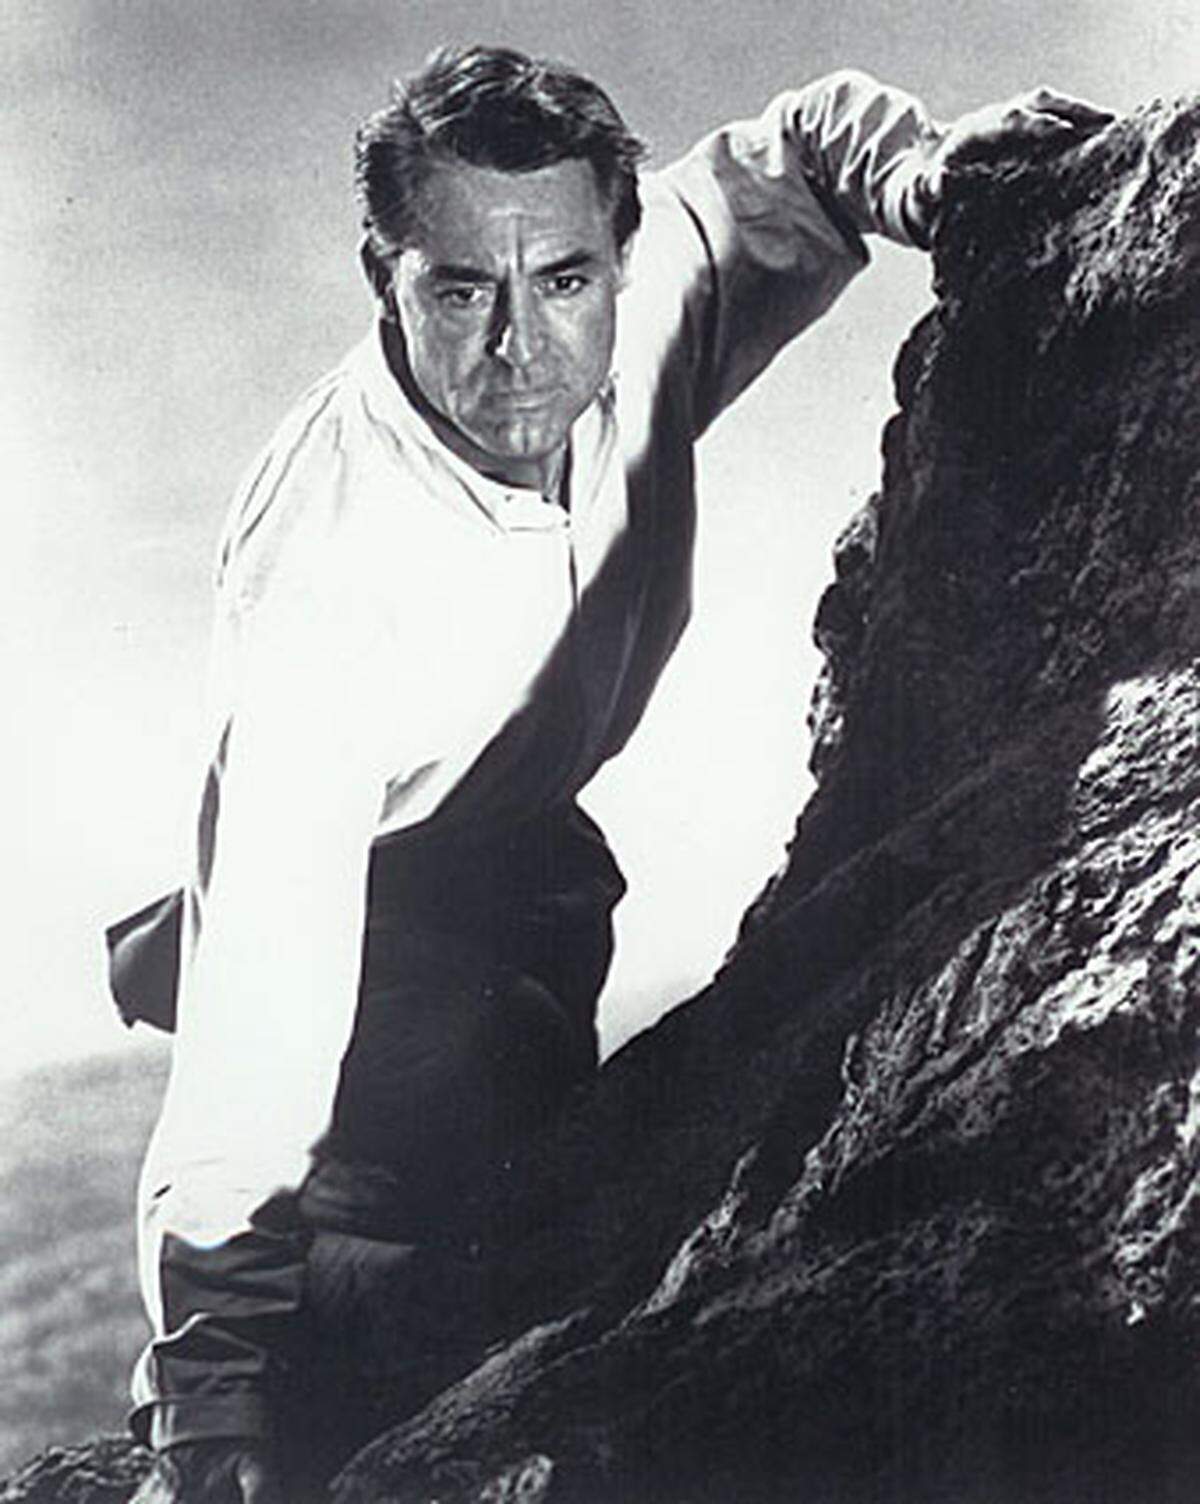 Er legt sofort eine Reihe brisanter zeitpolitischer Spionagethriller nach.  Im Bild: Cary Grant in "Der unsichtbare Dritte" (North by Northwest) (1959)